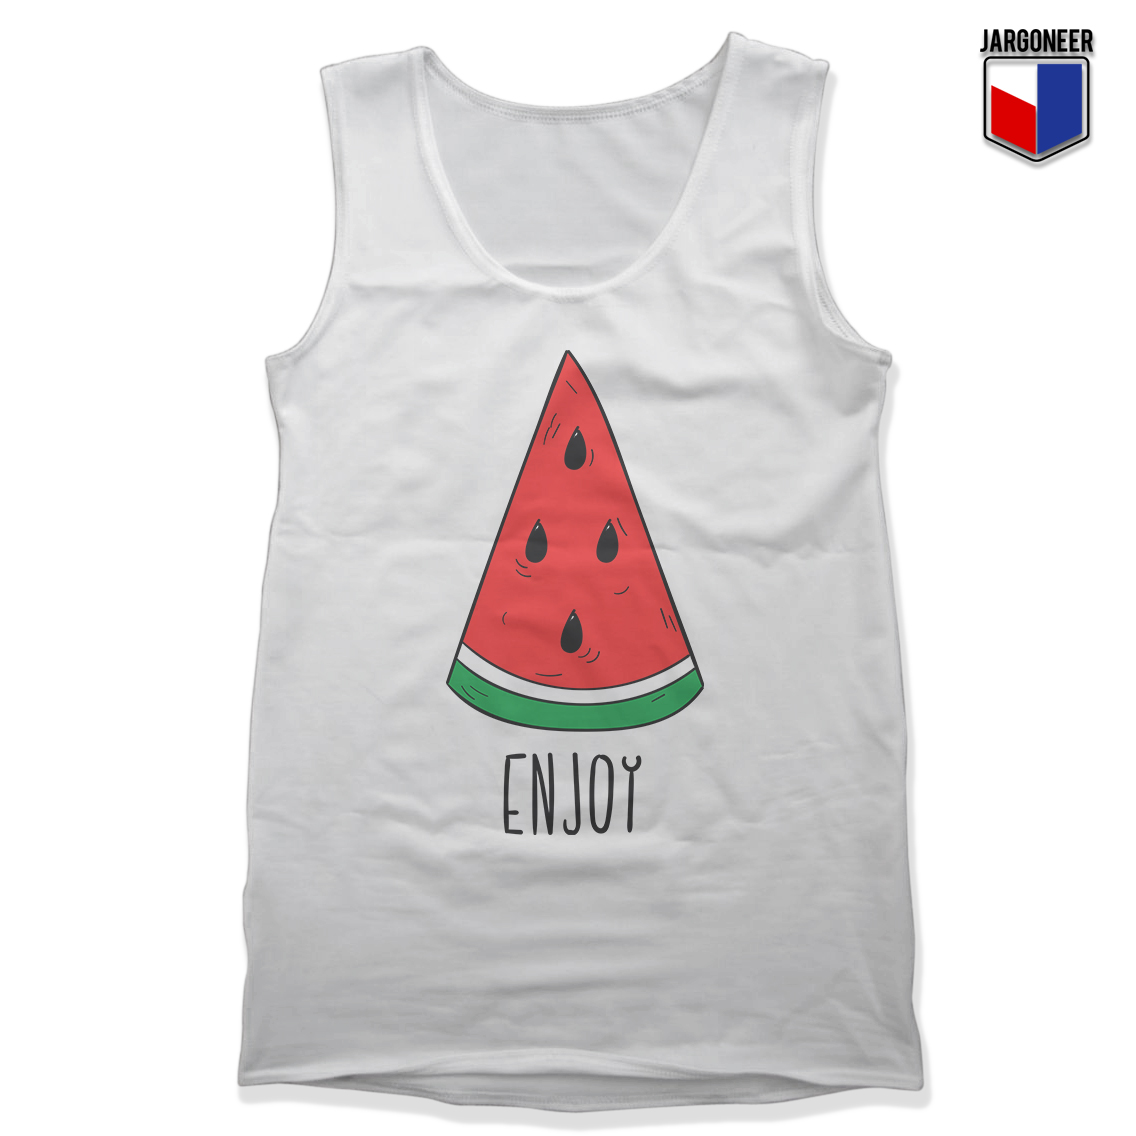 Enjoy Watermelon White Tank - Shop Unique Graphic Cool Shirt Designs